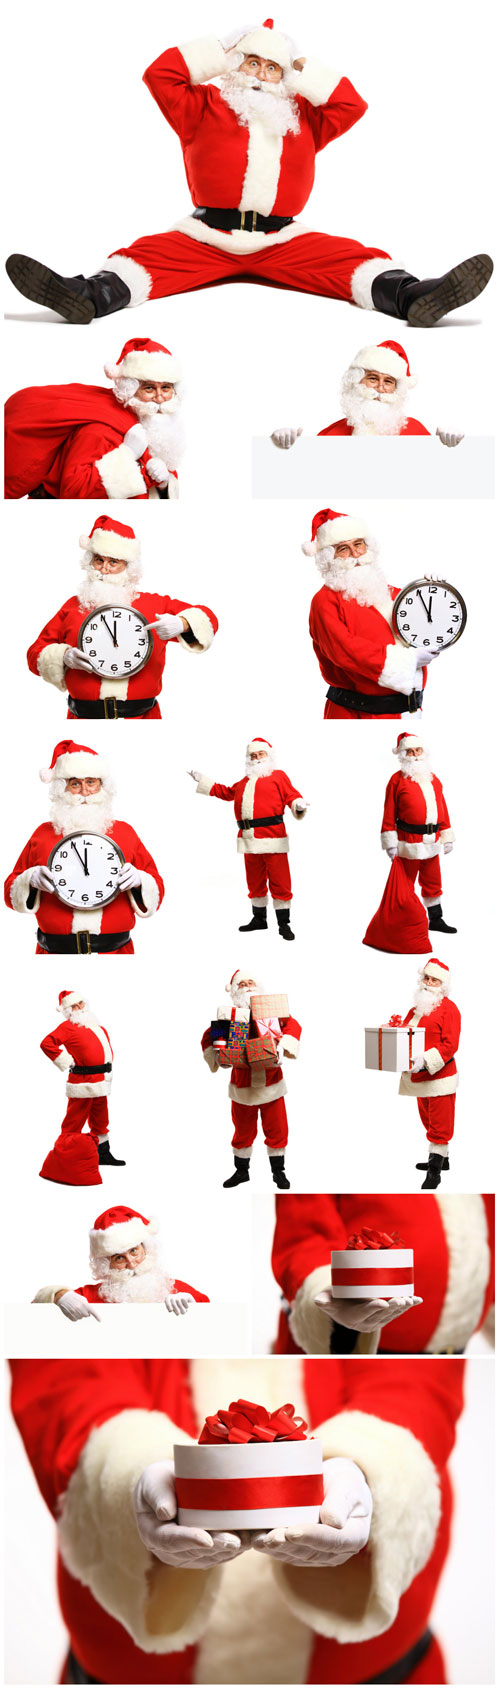 Santa Claus, Christmas, New Year